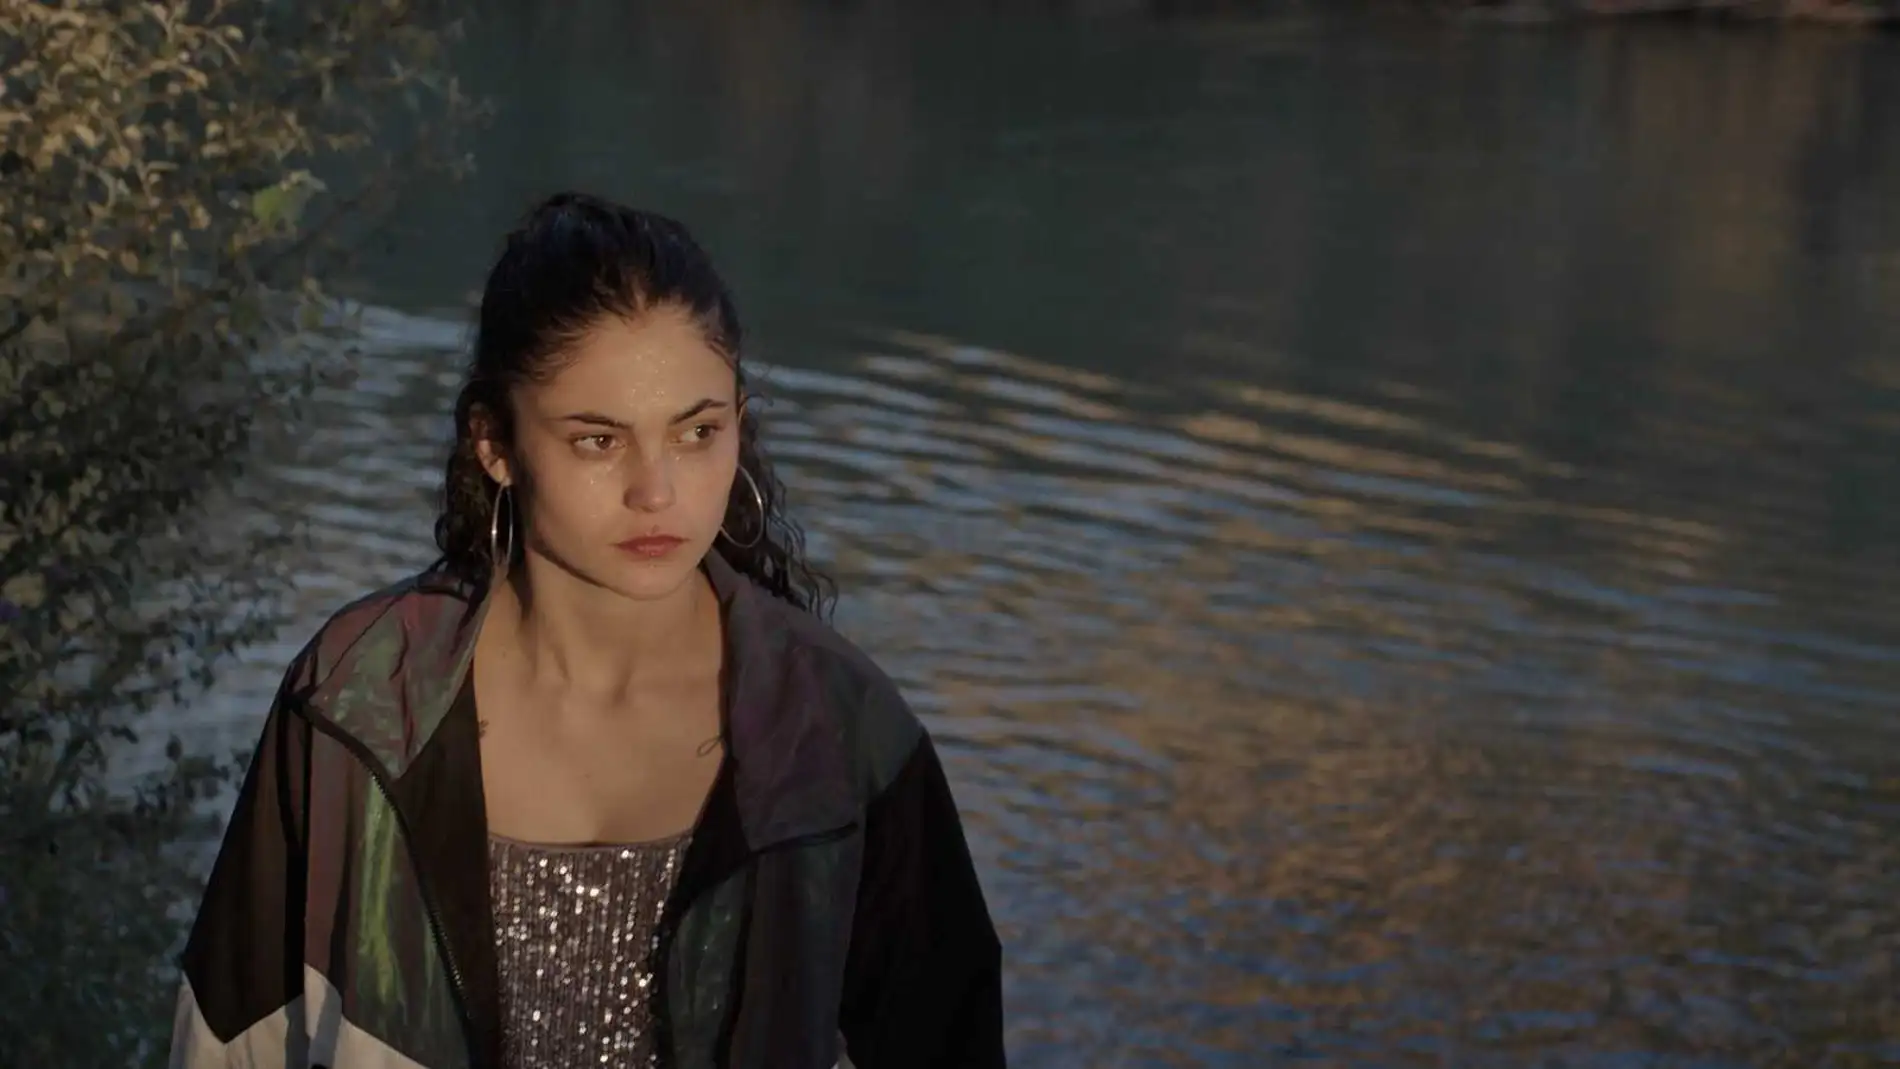 La joven de 18 años Luna Pamies debuta como protagonista absoluta en la película de Elena López Riera